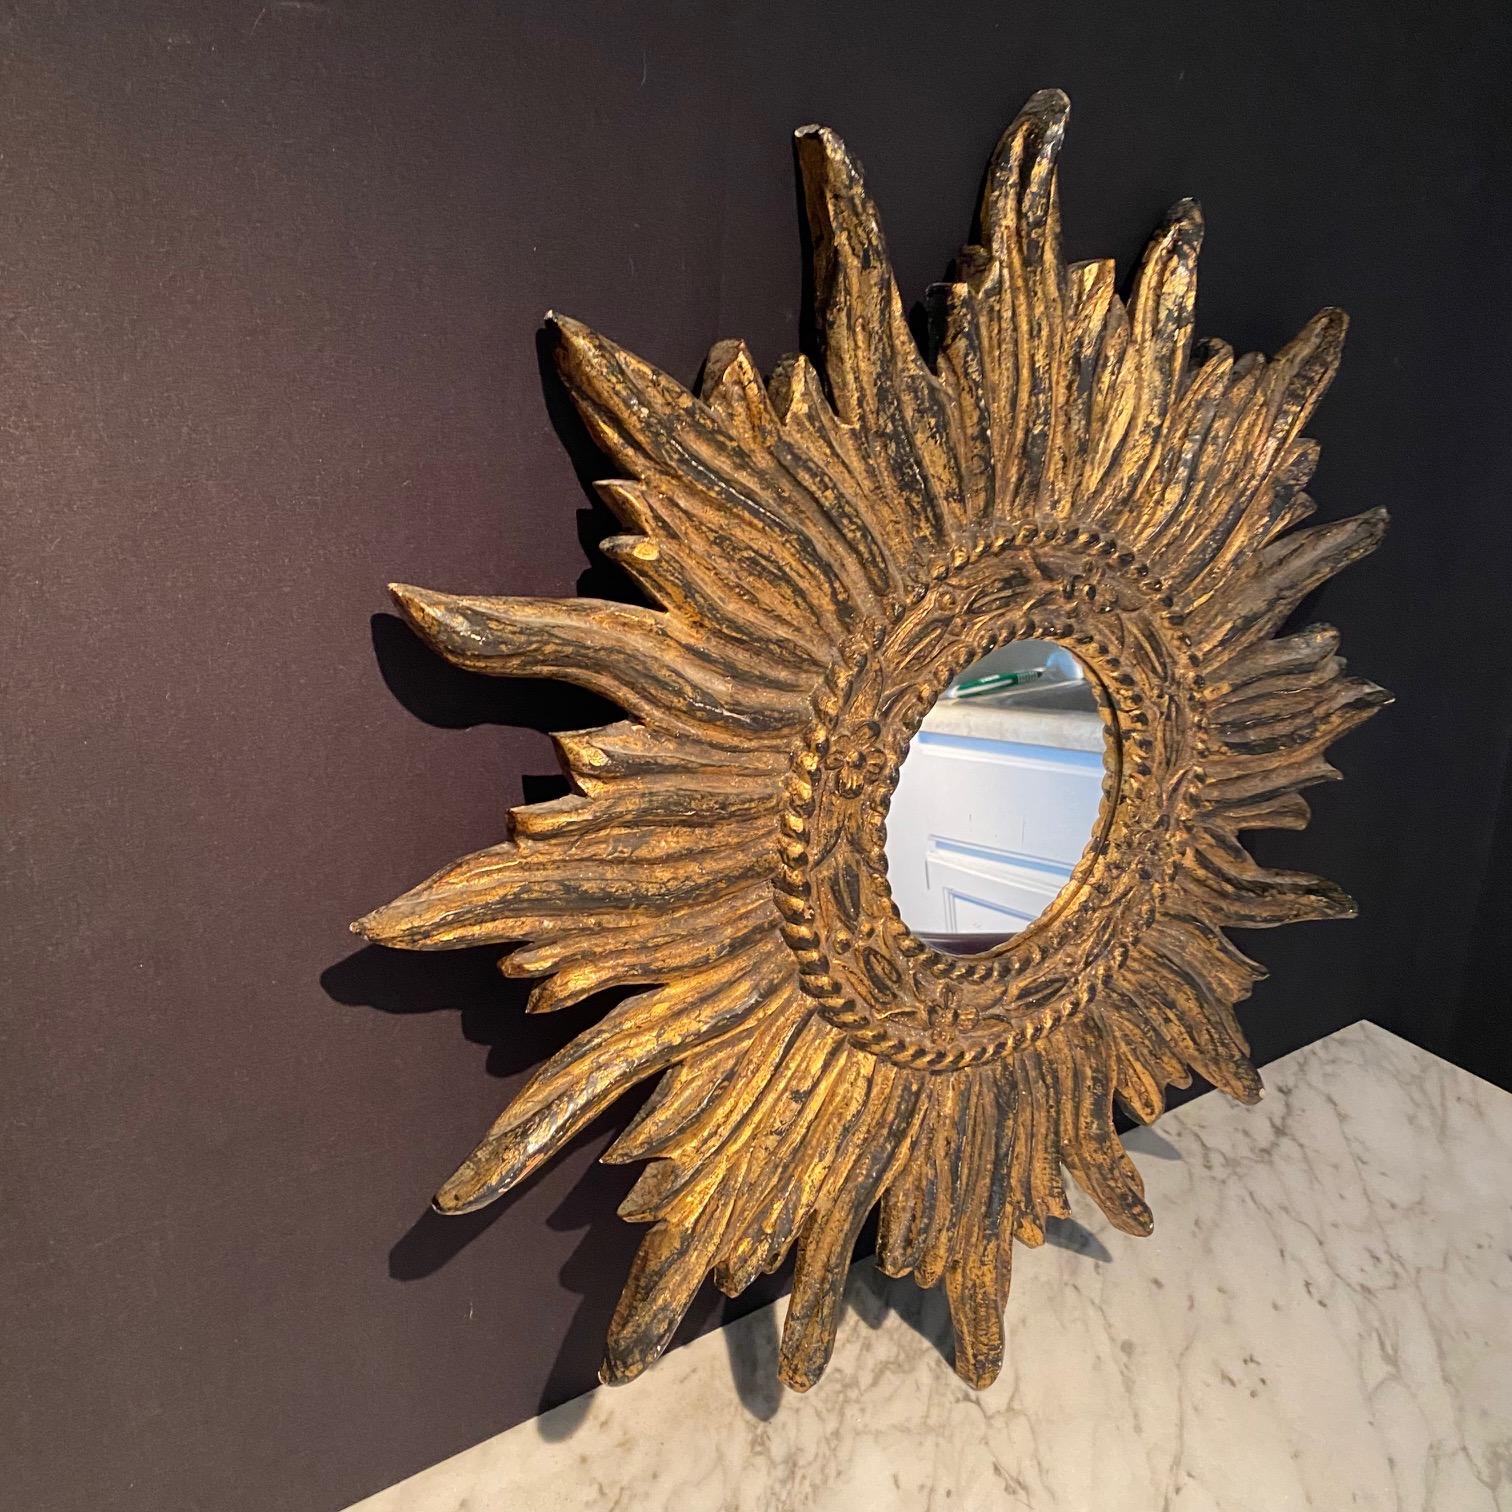  Eine sehr schöne, komplizierte und dekorative große goldene soleil sunburst starburst vergoldetem konvexen Spiegel. Hergestellt und gekauft in Frankreich. Handgefertigt aus wunderschön geschnitztem, vergoldetem Holz, in sehr gutem Zustand. Eines